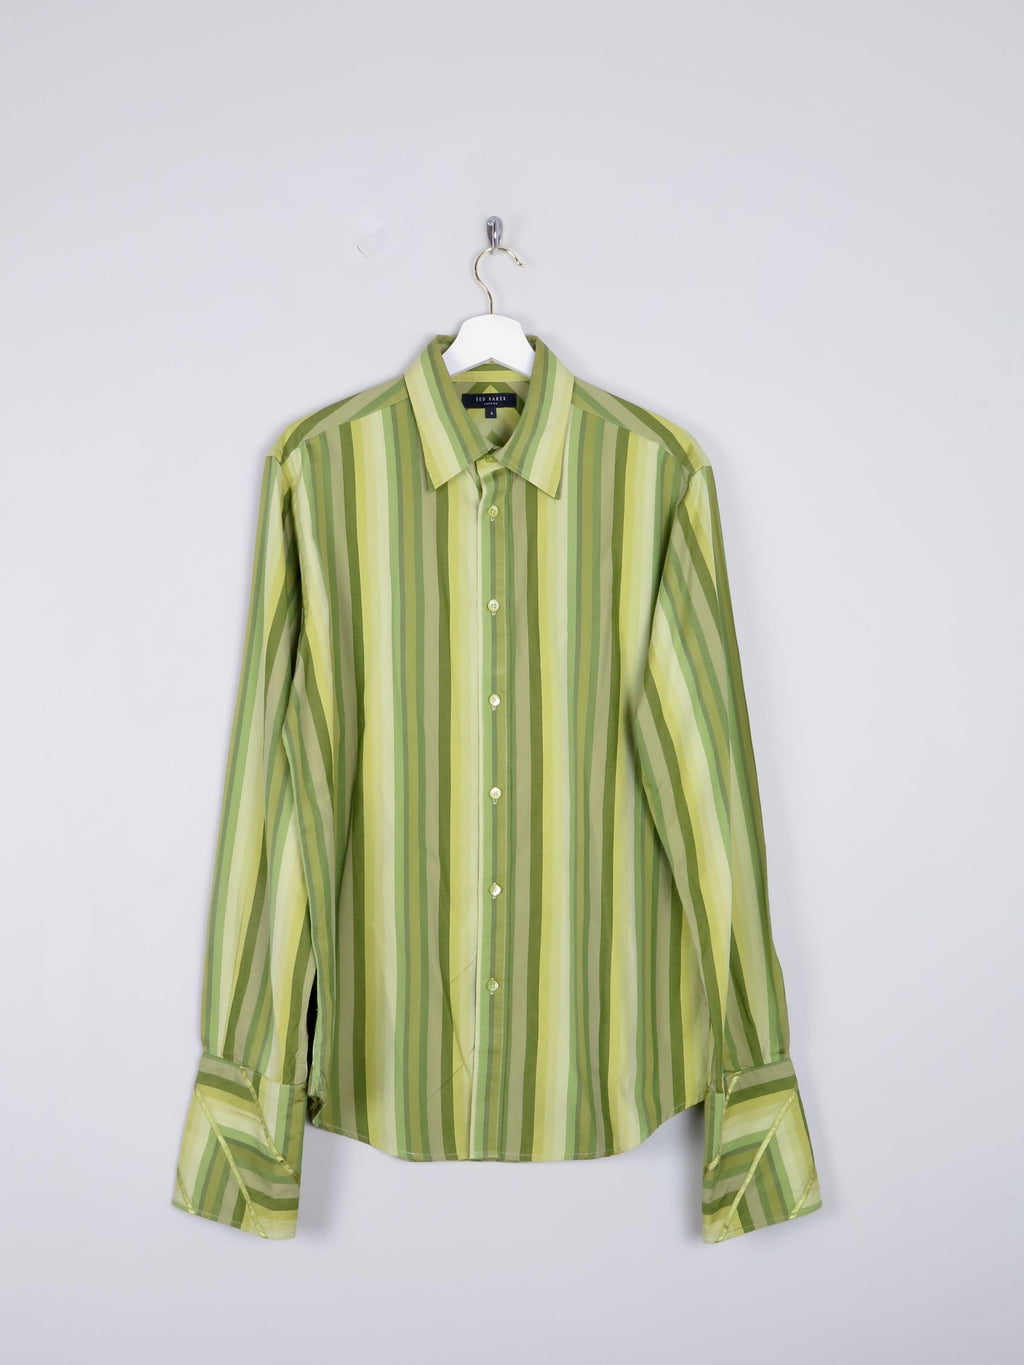 Men's VIntage Ted Baker Green Striped Shirt Size: 4 /L - The Harlequin